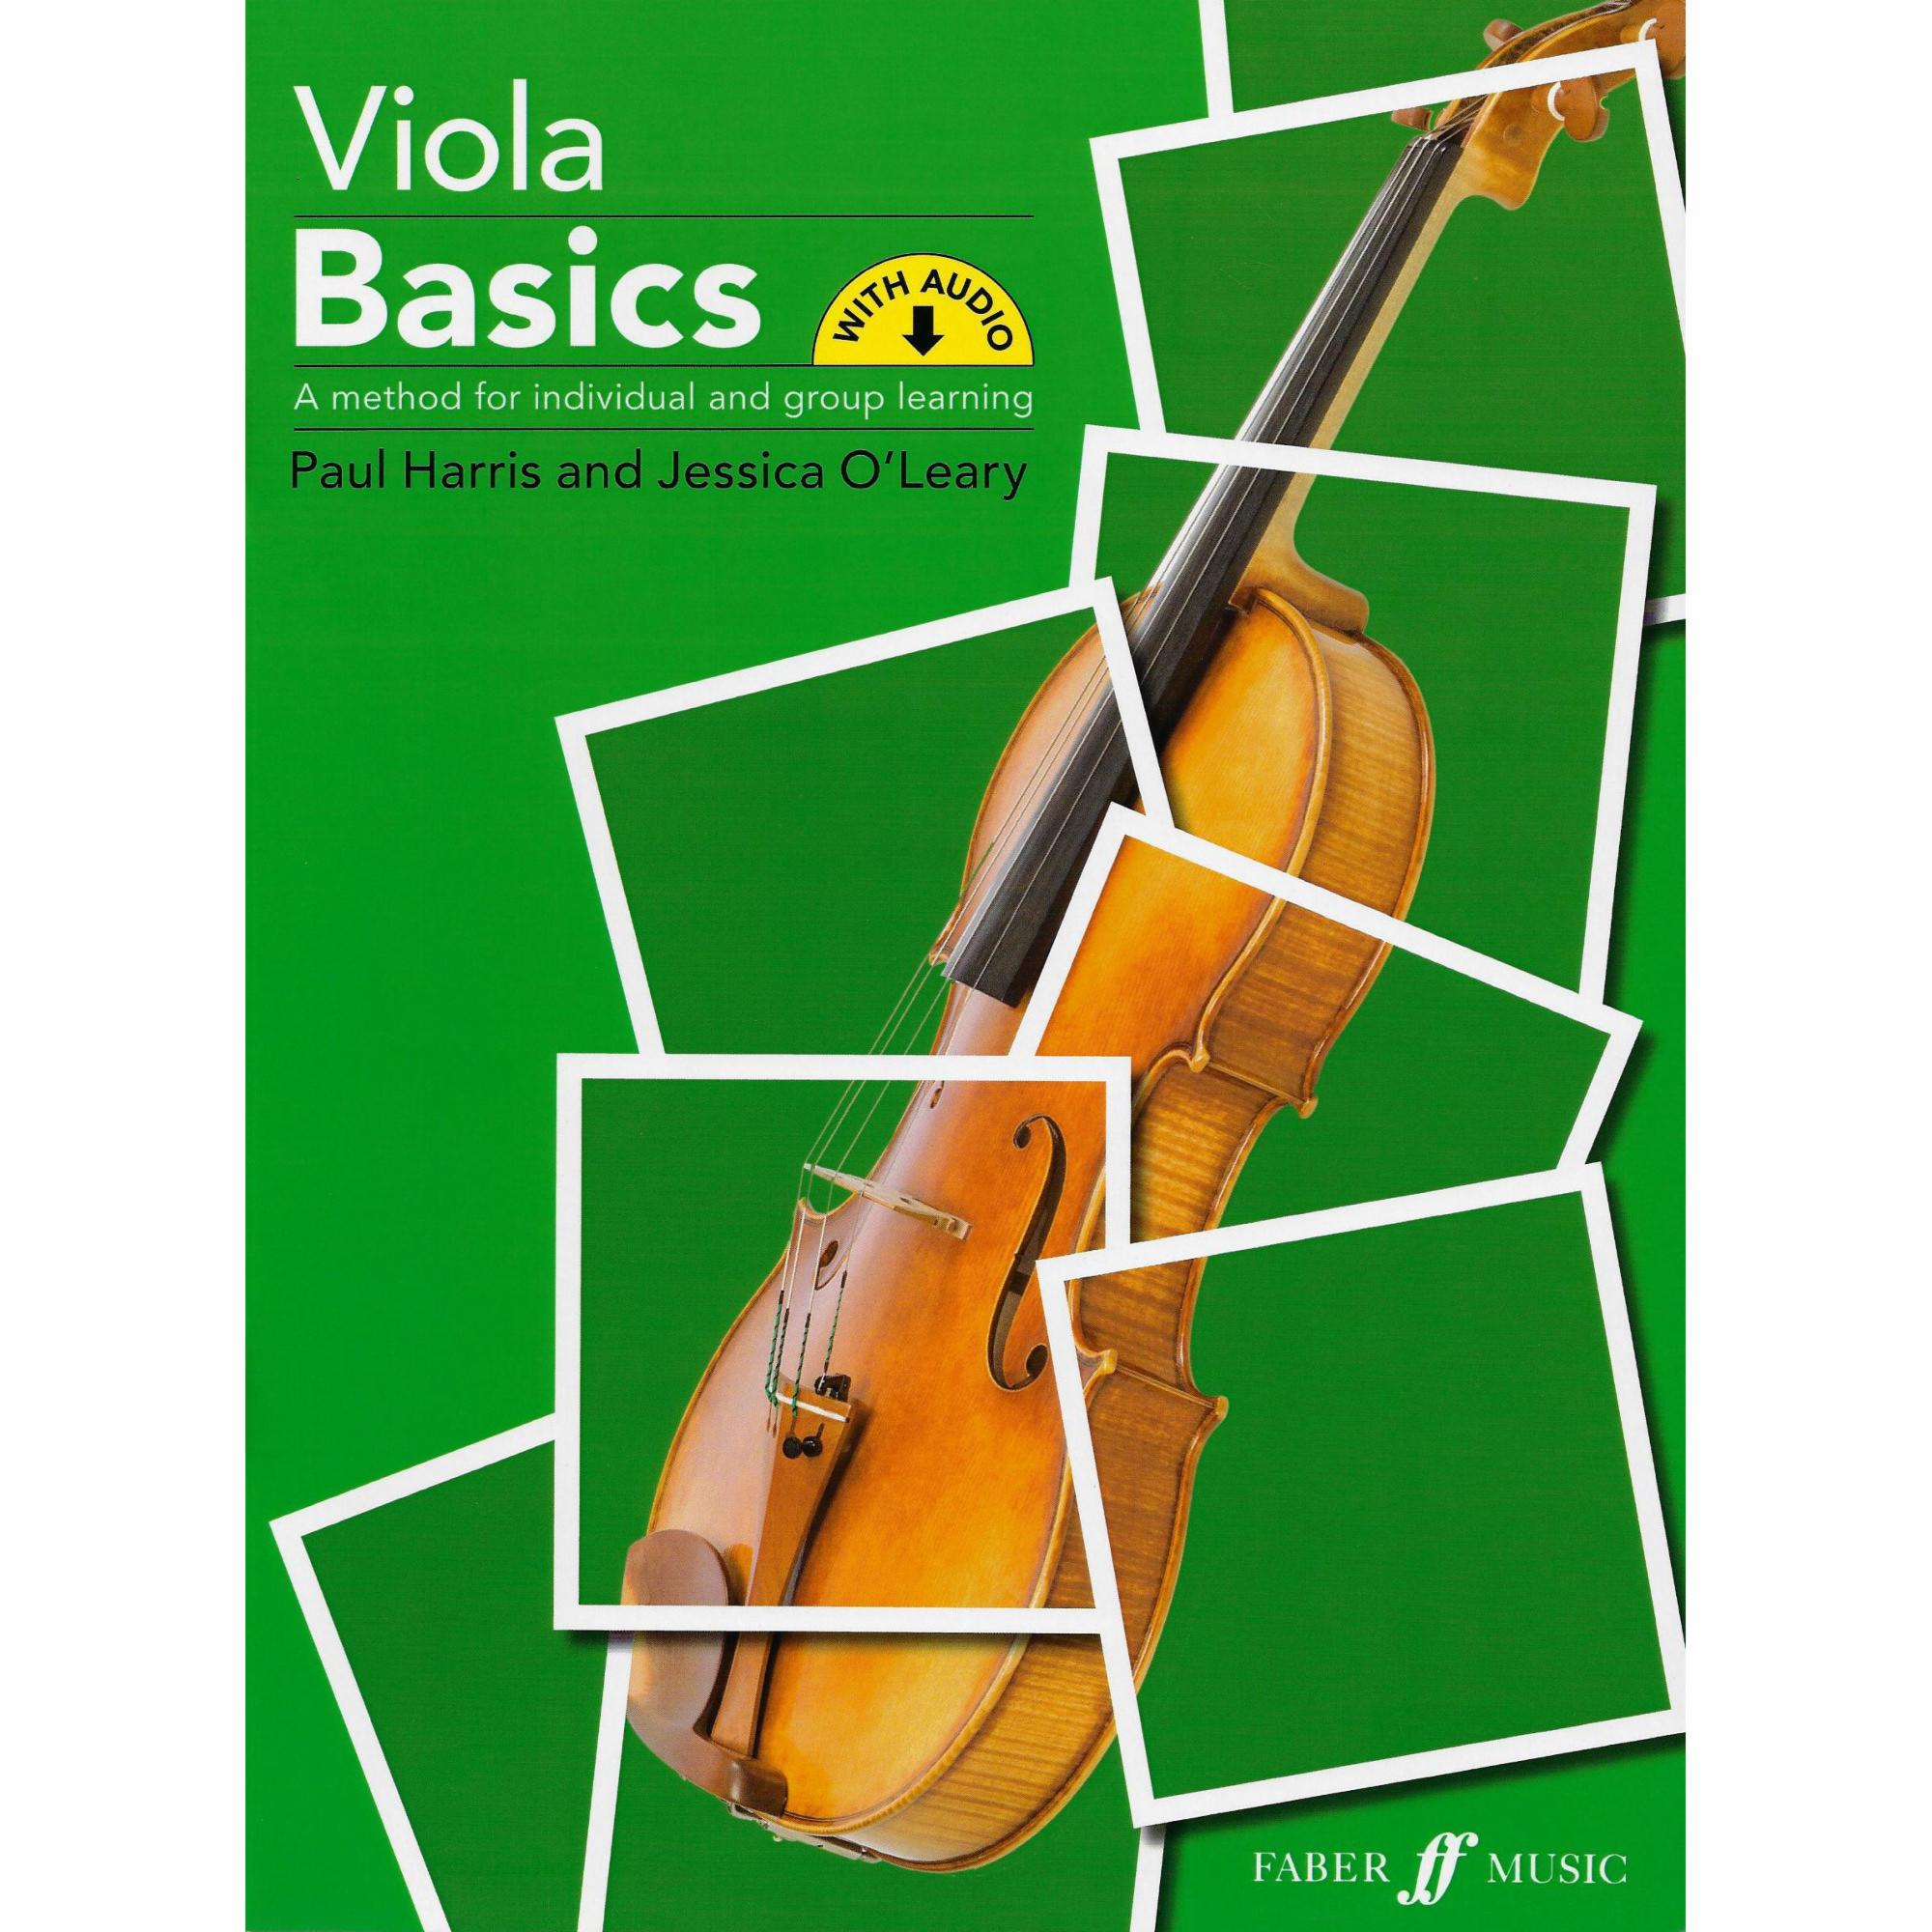 Viola Basics